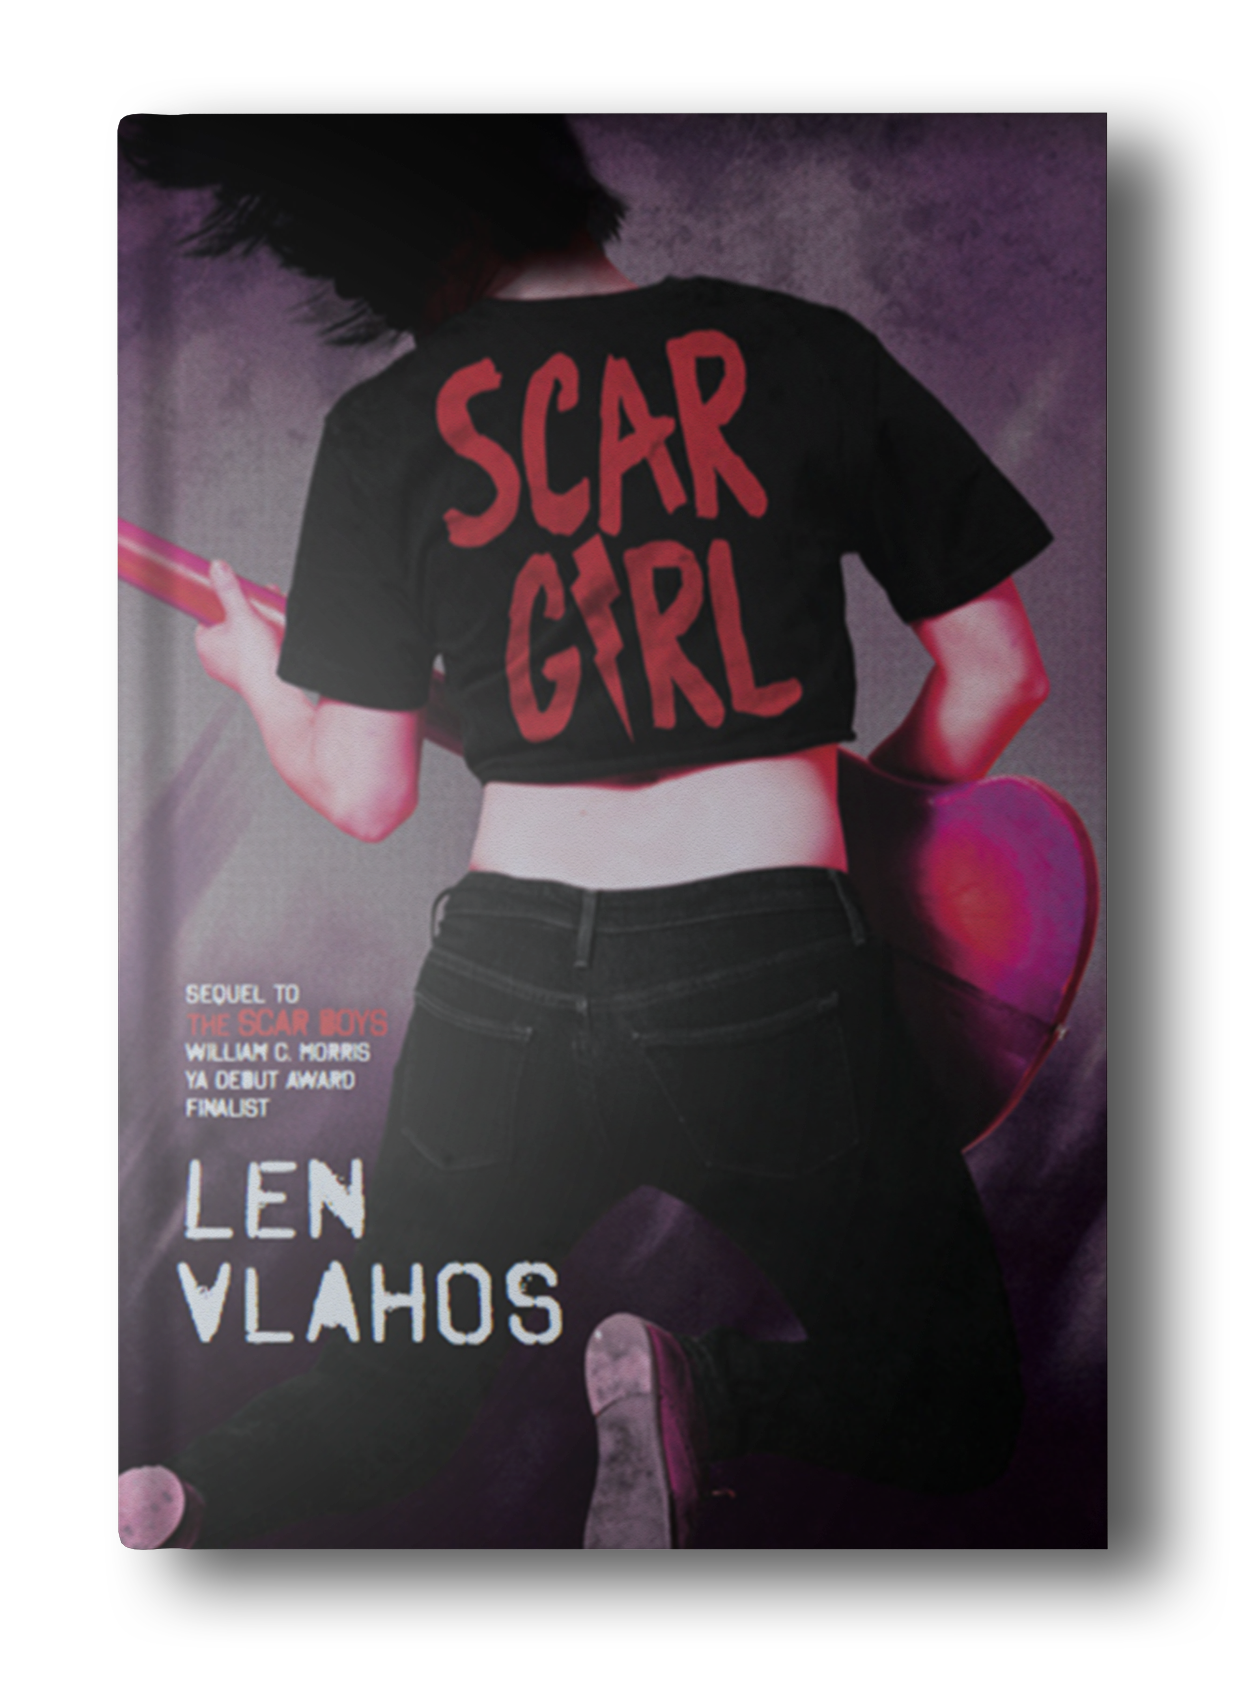 scar girl book flat